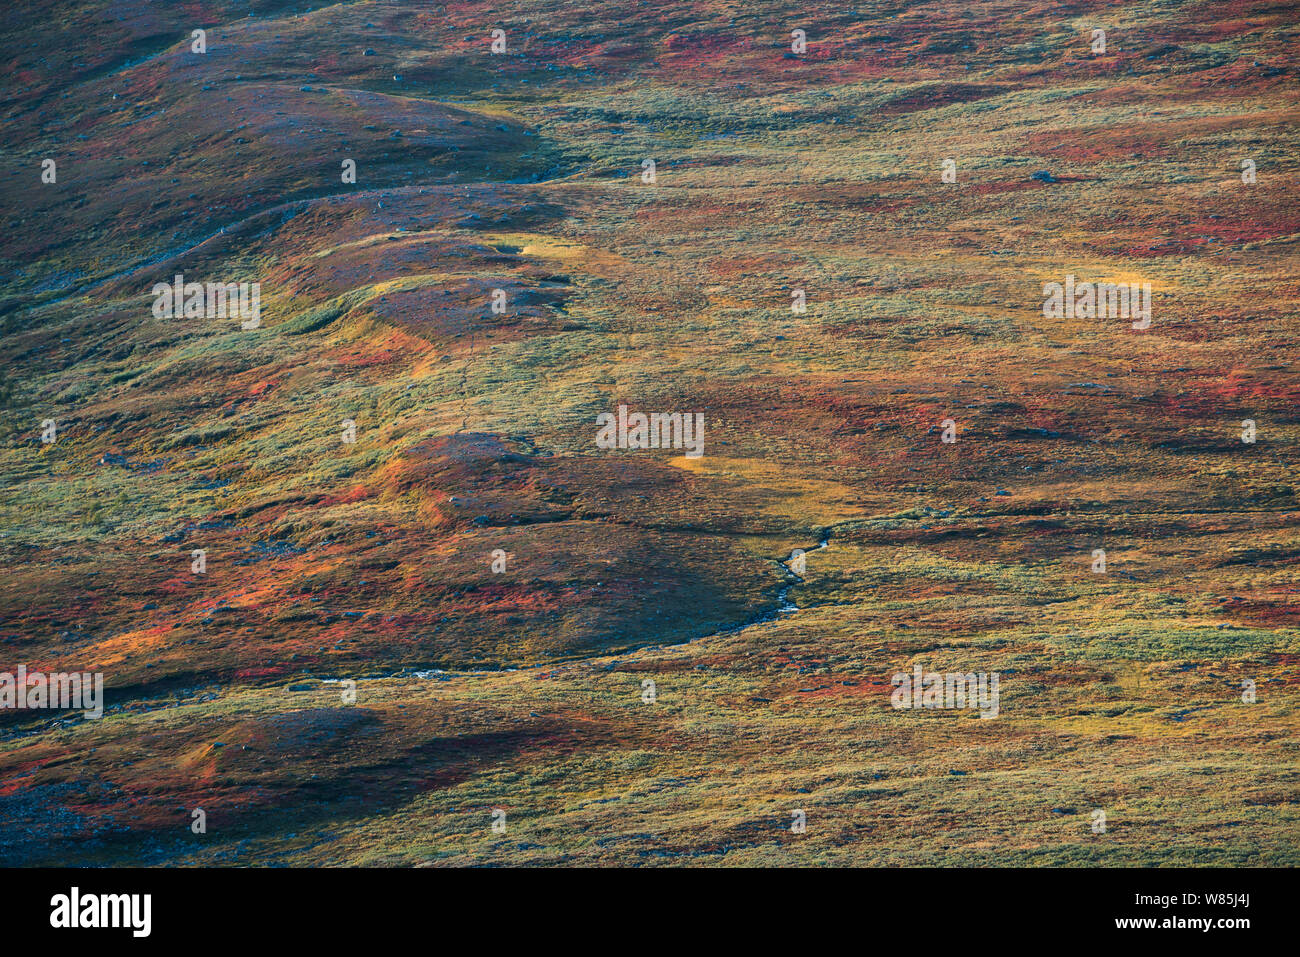 La végétation d'automne au-dessus de la limite forestière dans le Sarek National Park. Laponia Patrimoine mondial, en Laponie suédoise, la Suède. Septembre 2009. Banque D'Images